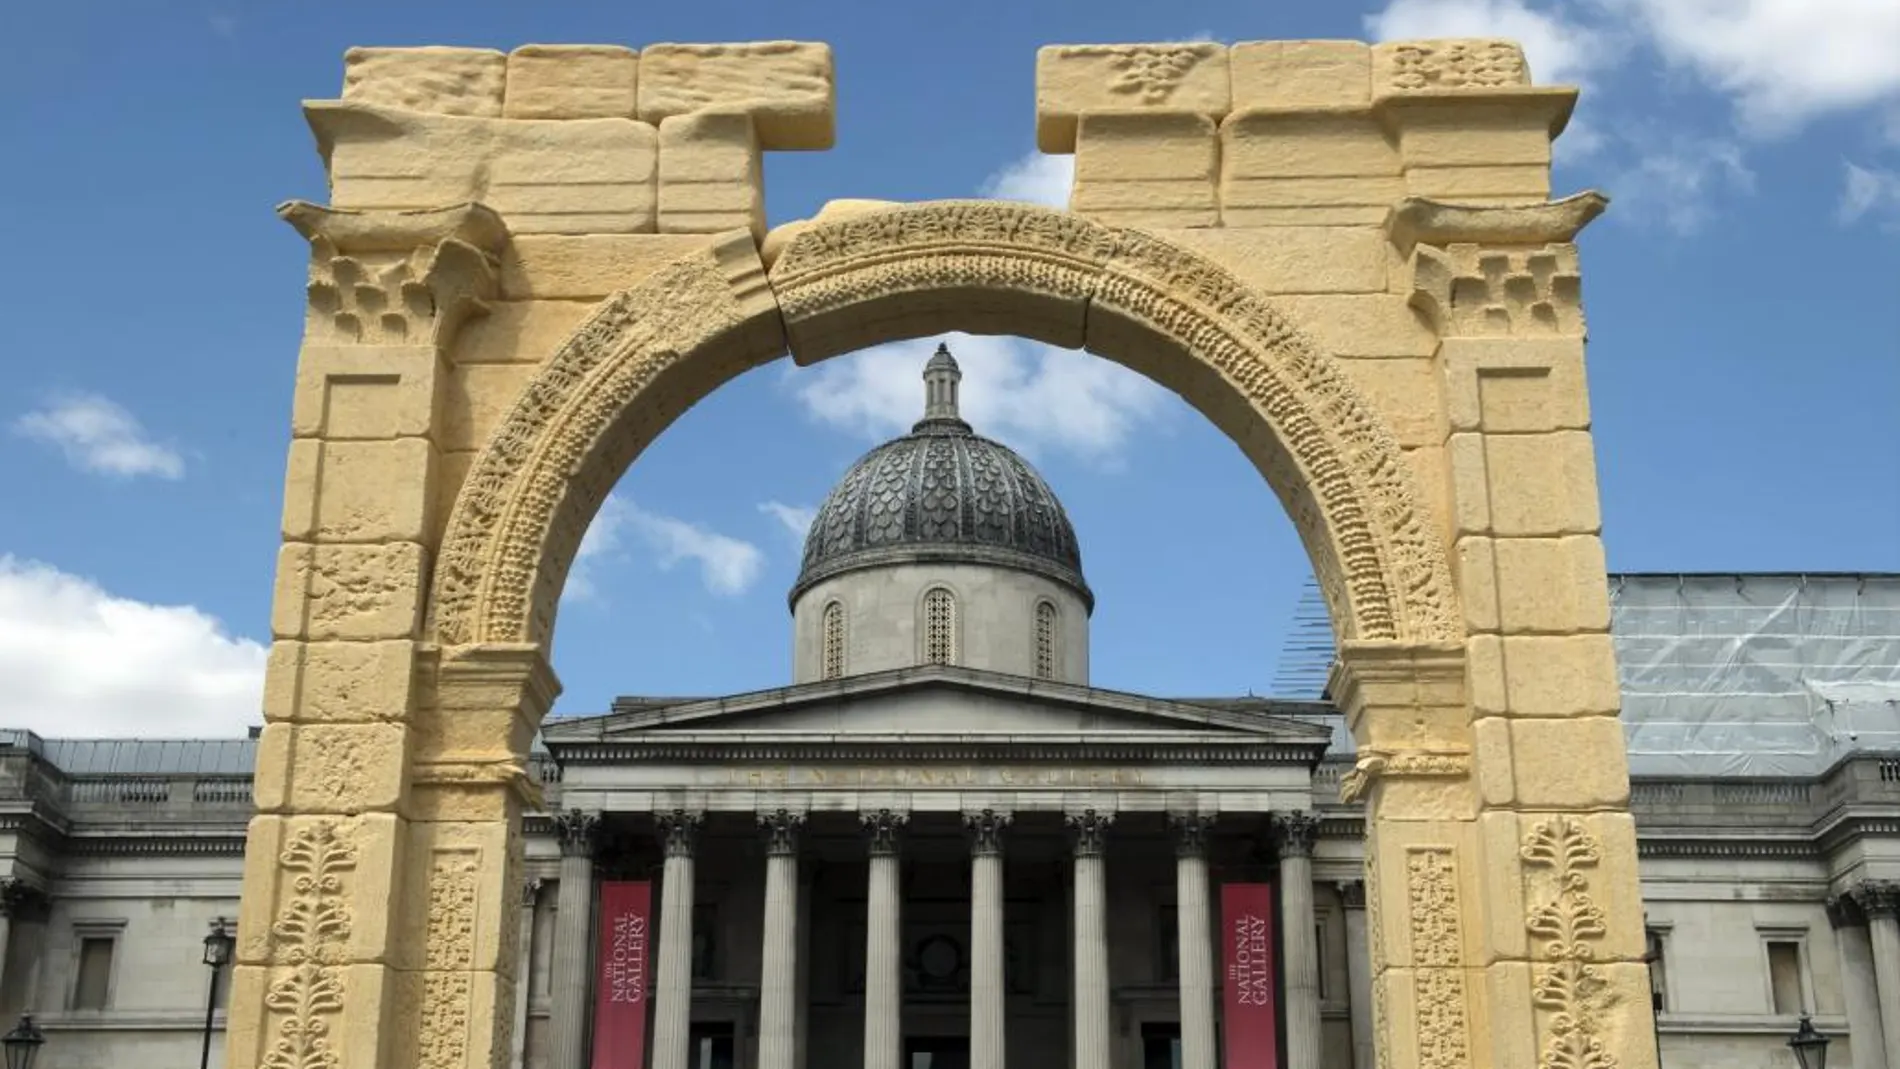 Vista de la réplica del Arco de Triunfo de la localidad siria de Palmira colocada en la plaza londinense de Trafalgar, Reino Unido